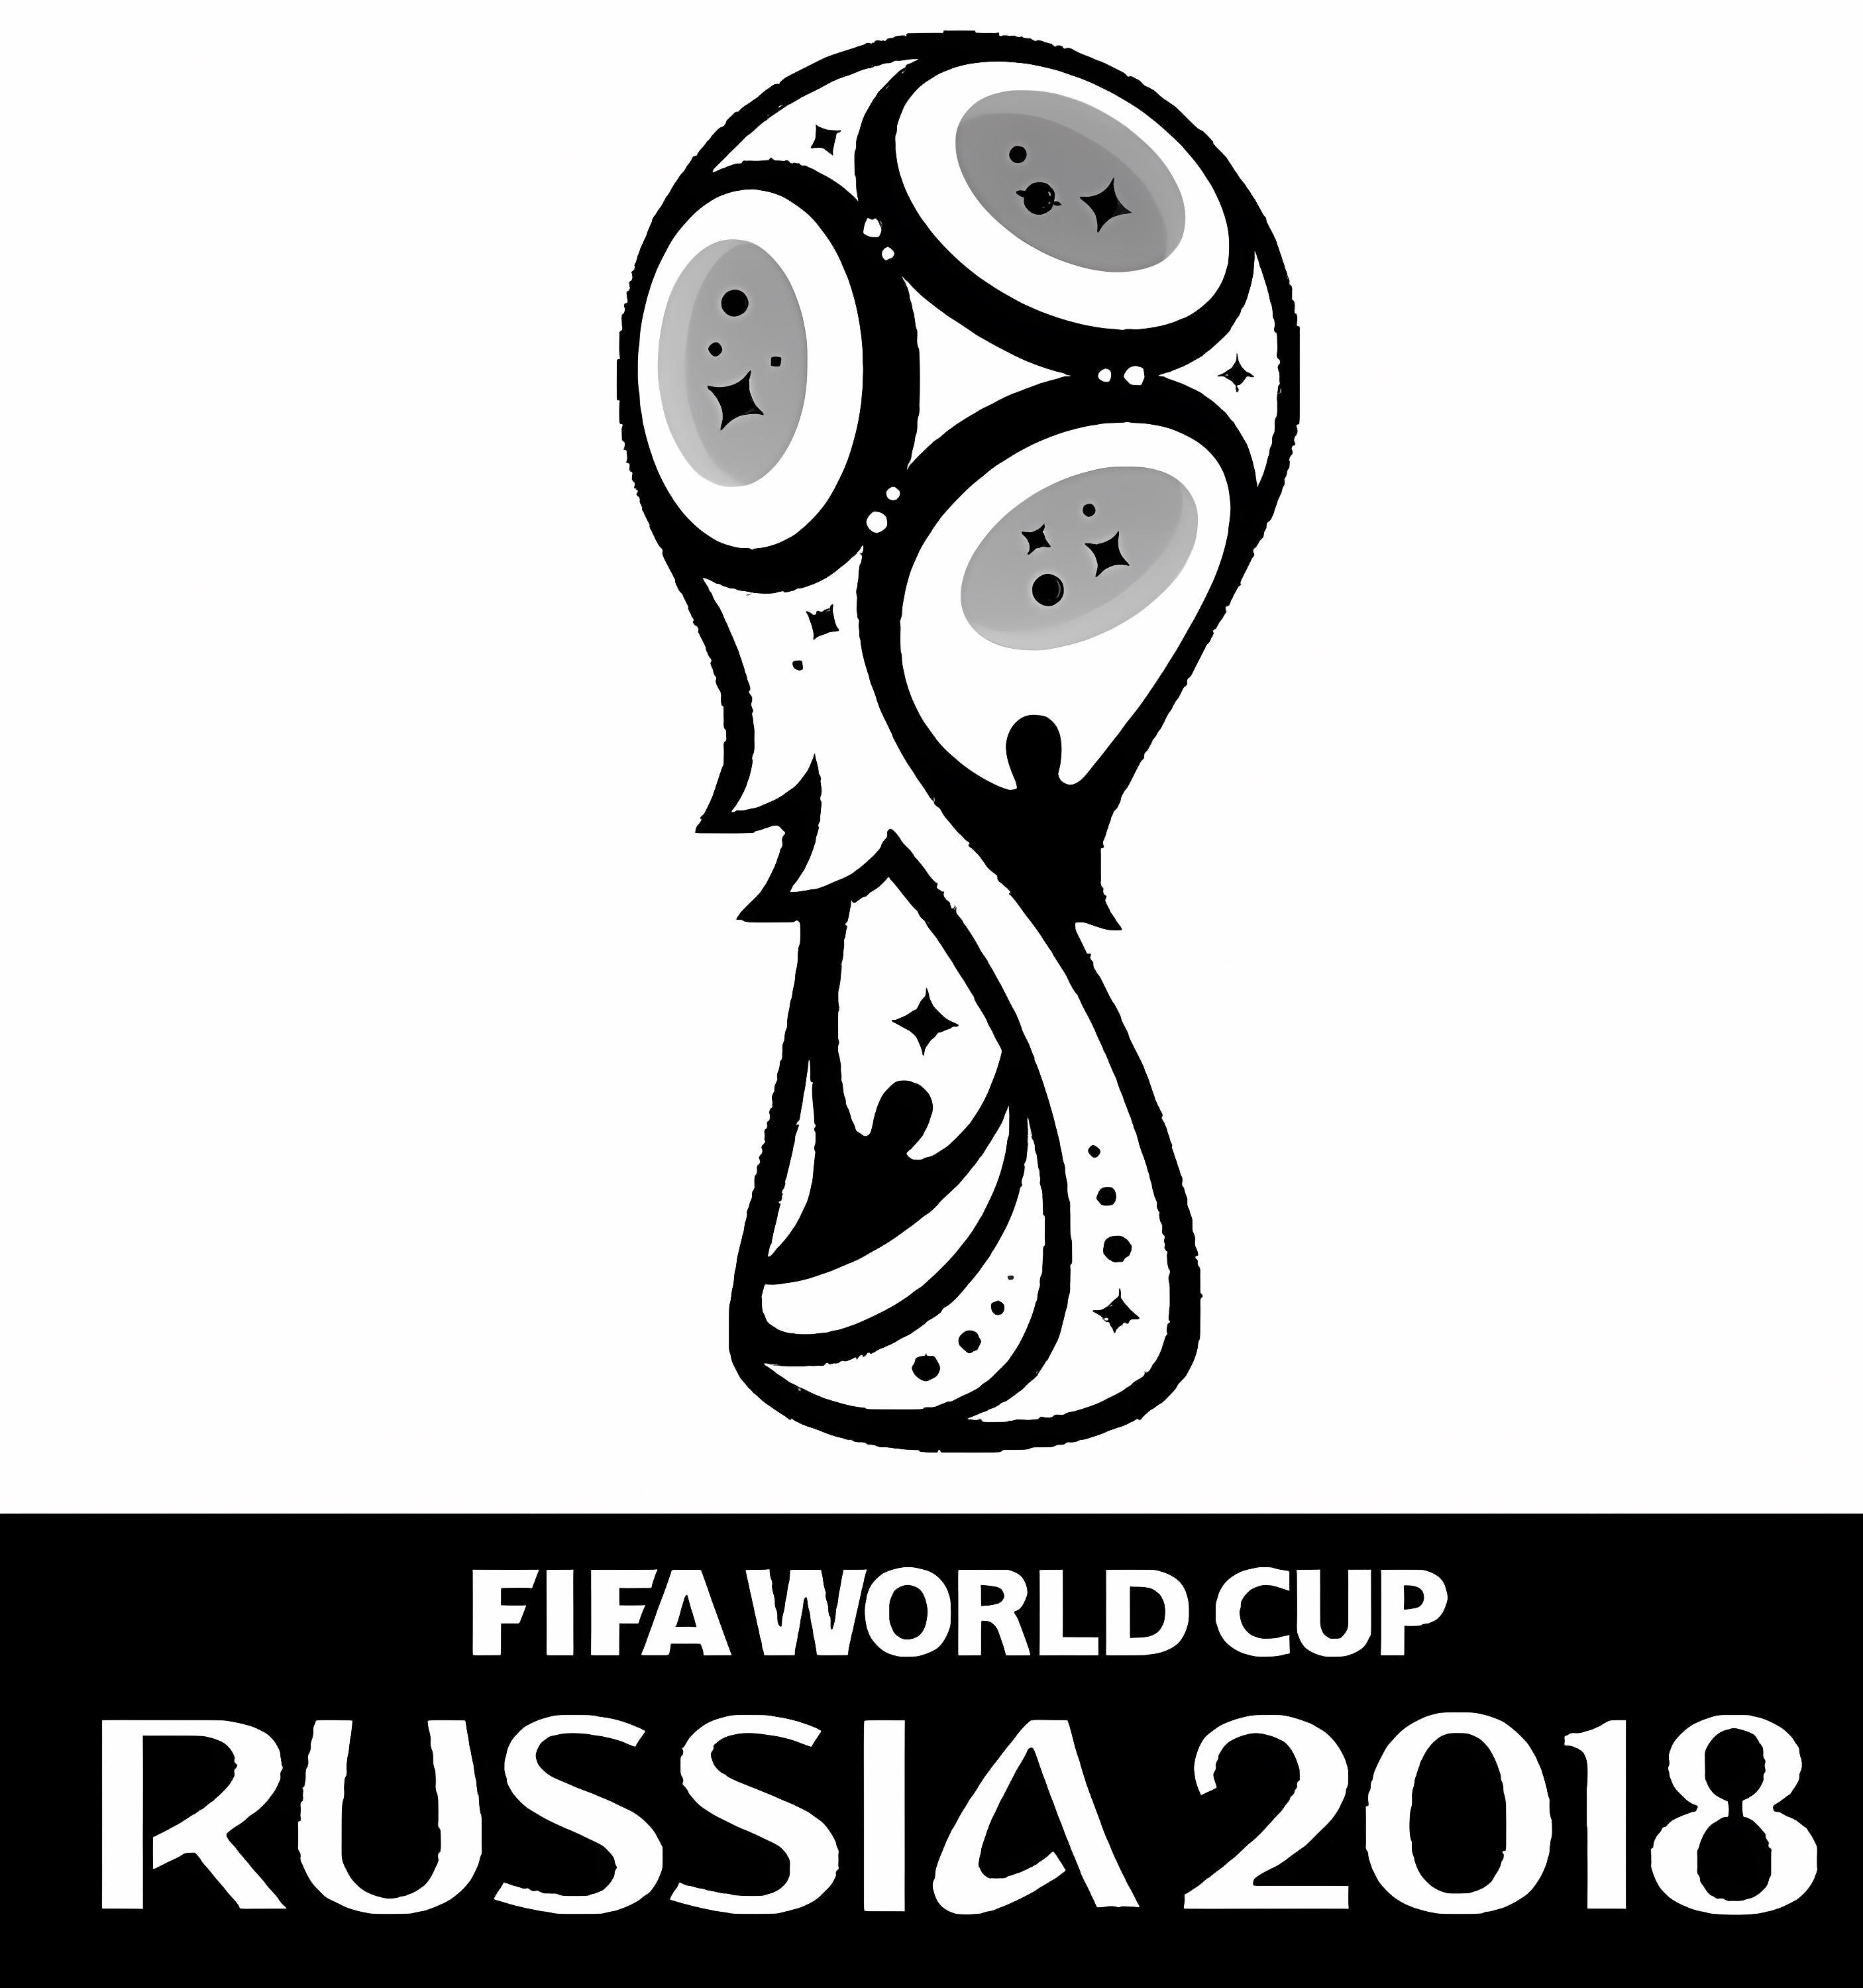  FIFA Dünya Kupası 2018 A4 boyama